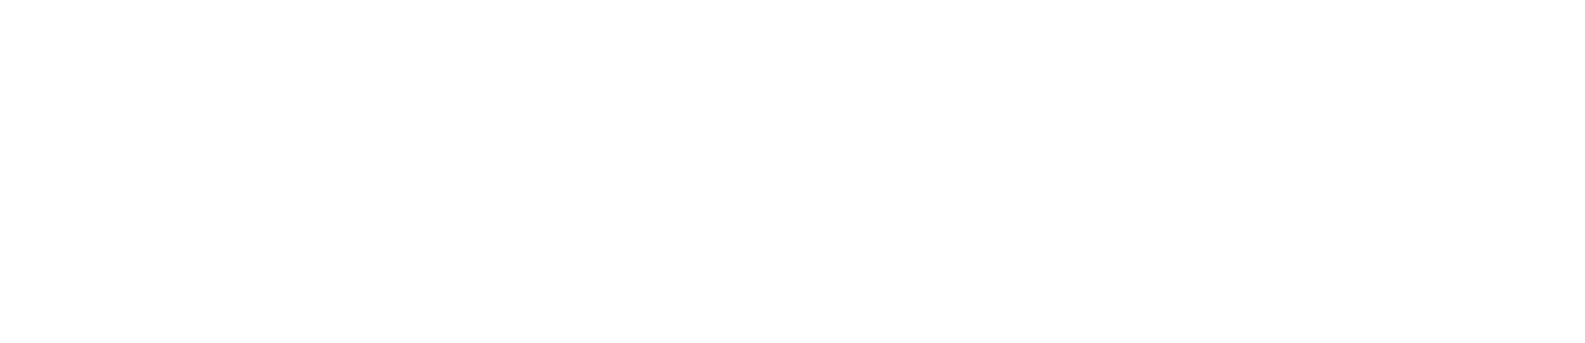 OneSpaWorld logo large for dark backgrounds (transparent PNG)